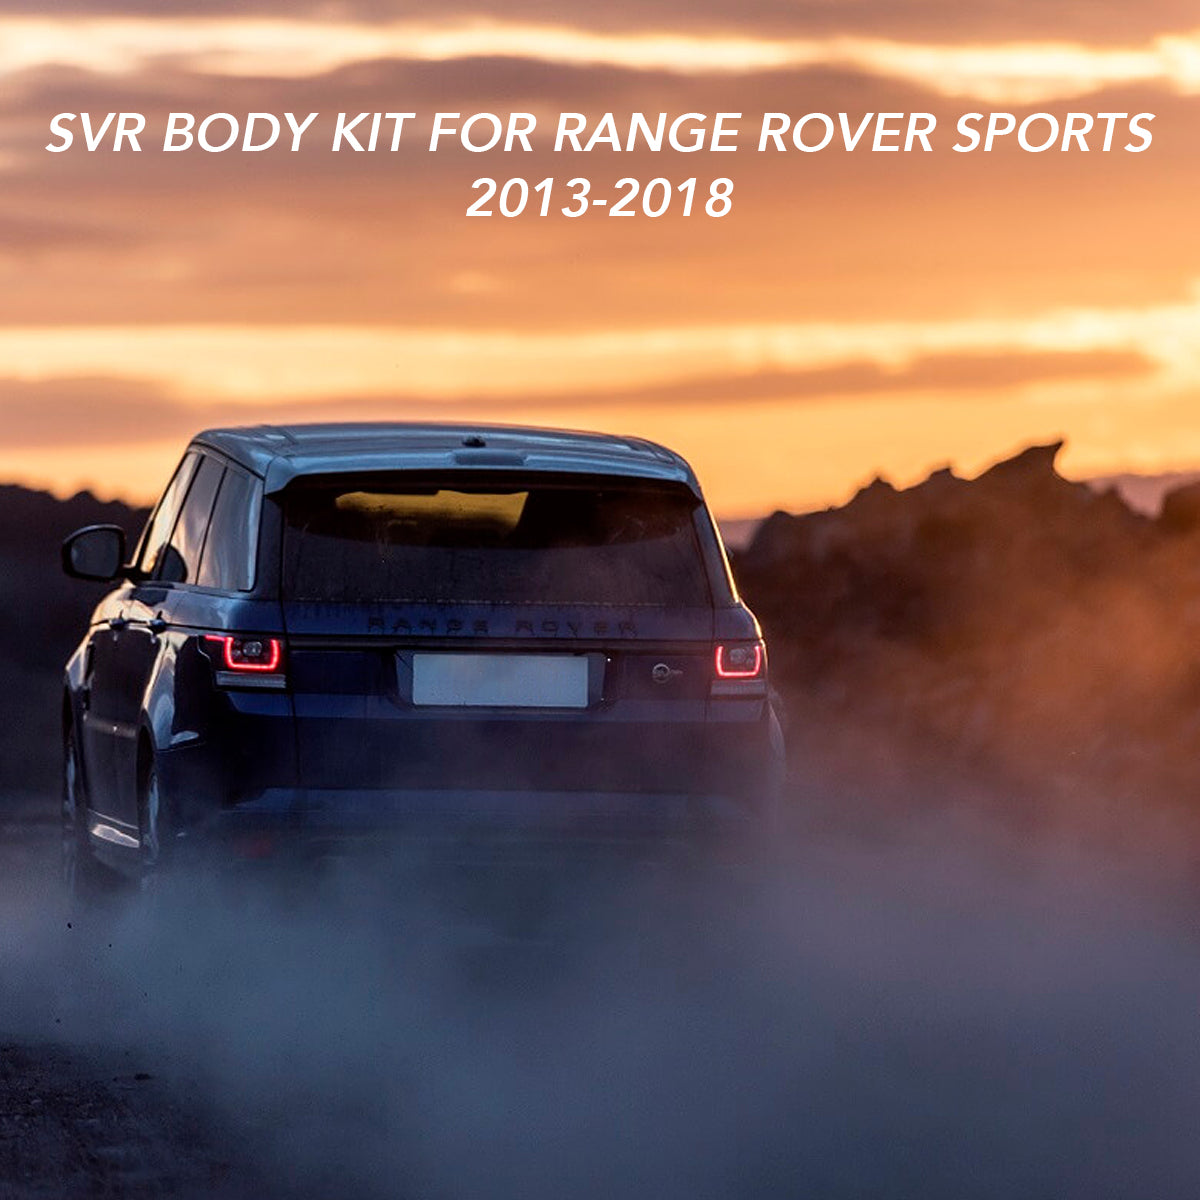 SVR BODY KIT FOR RANGE ROVER SPORTS 2013-2018